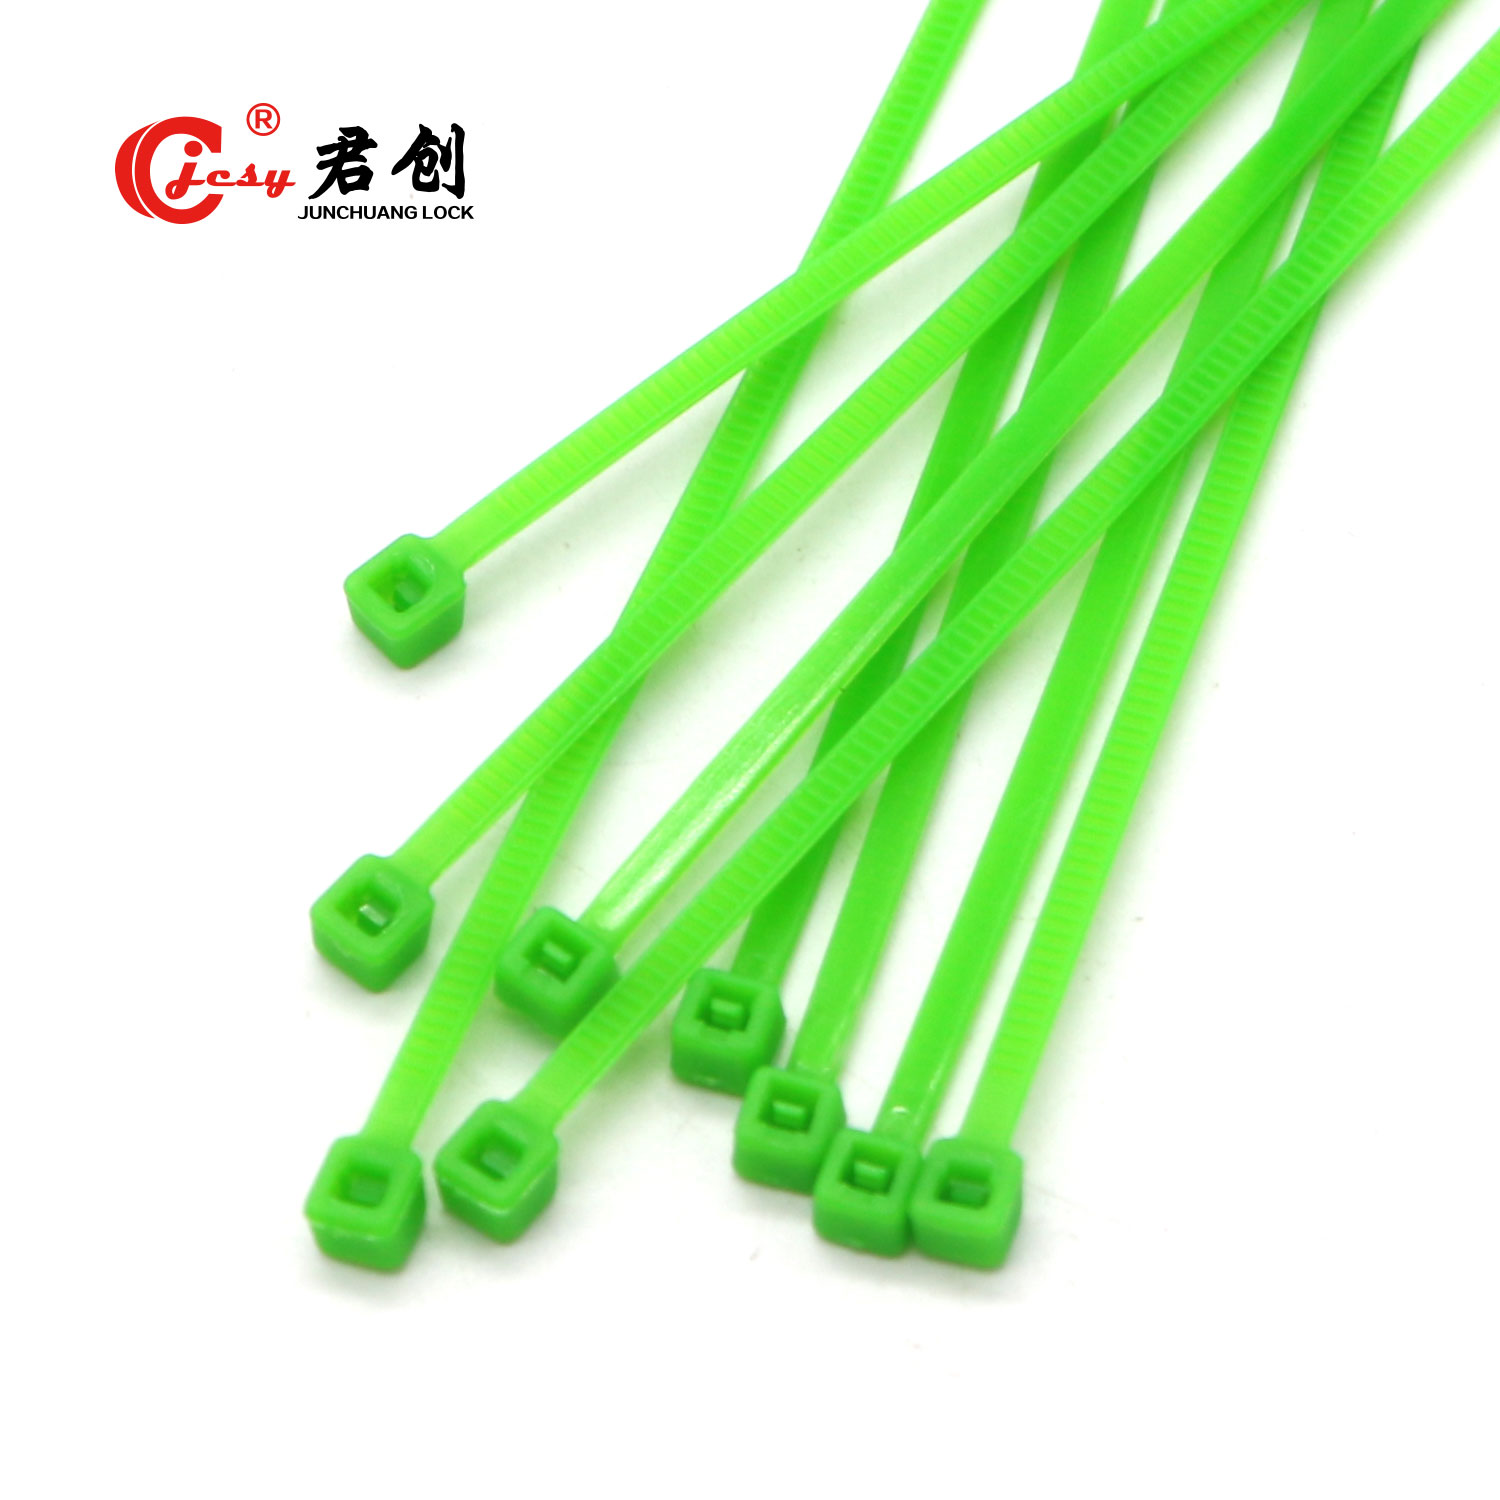 Nylon colorido cerradura ajustable plástico correa de Nylon Cable Zip Tie